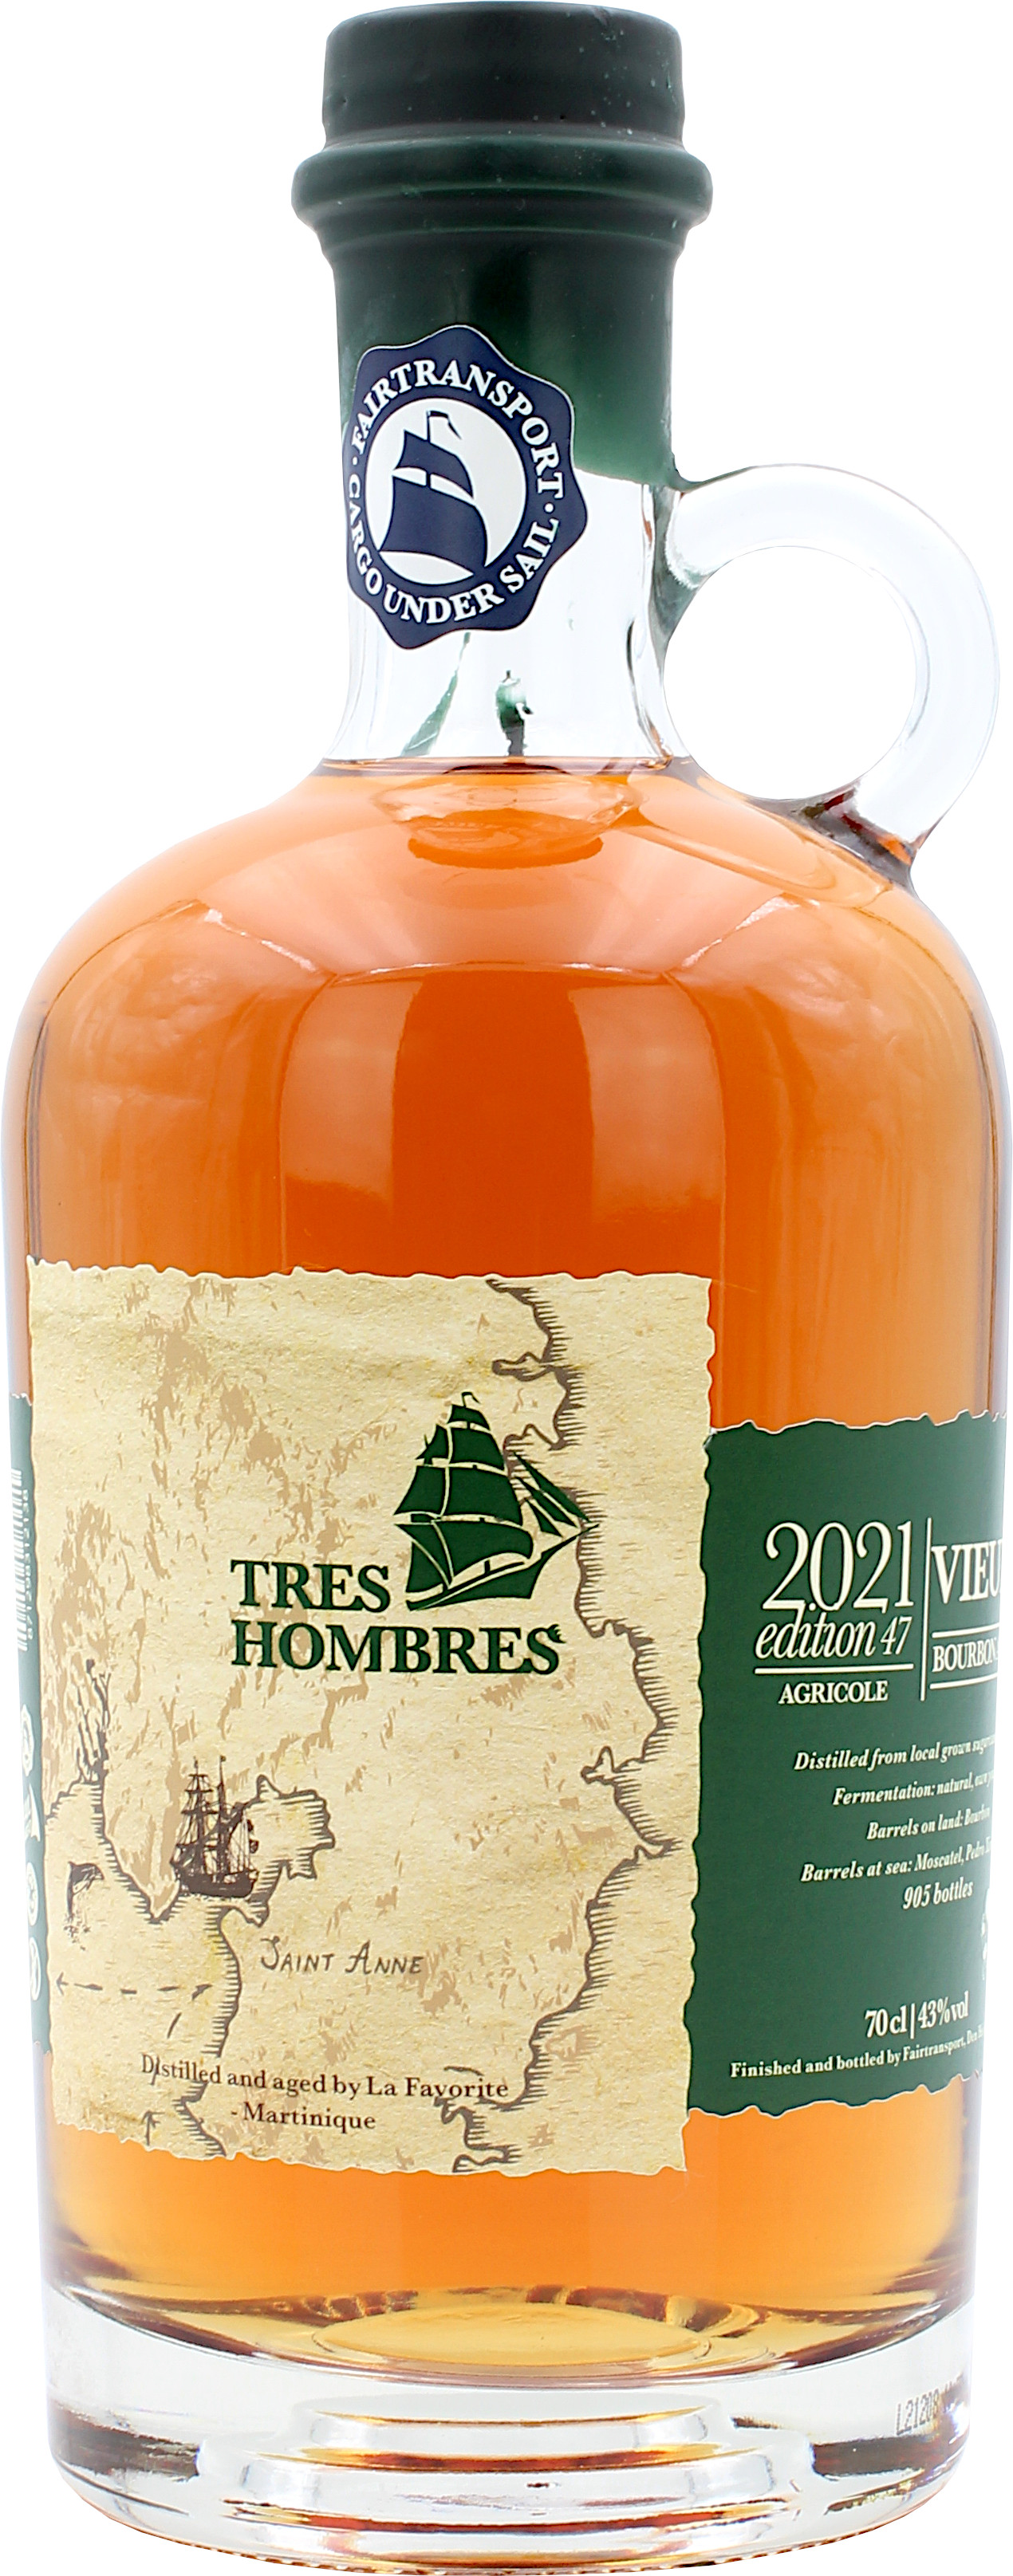 Tres Hombres Edition 47 Martinique Rhum Vieux Agricole 2021 43.0% 0,7l